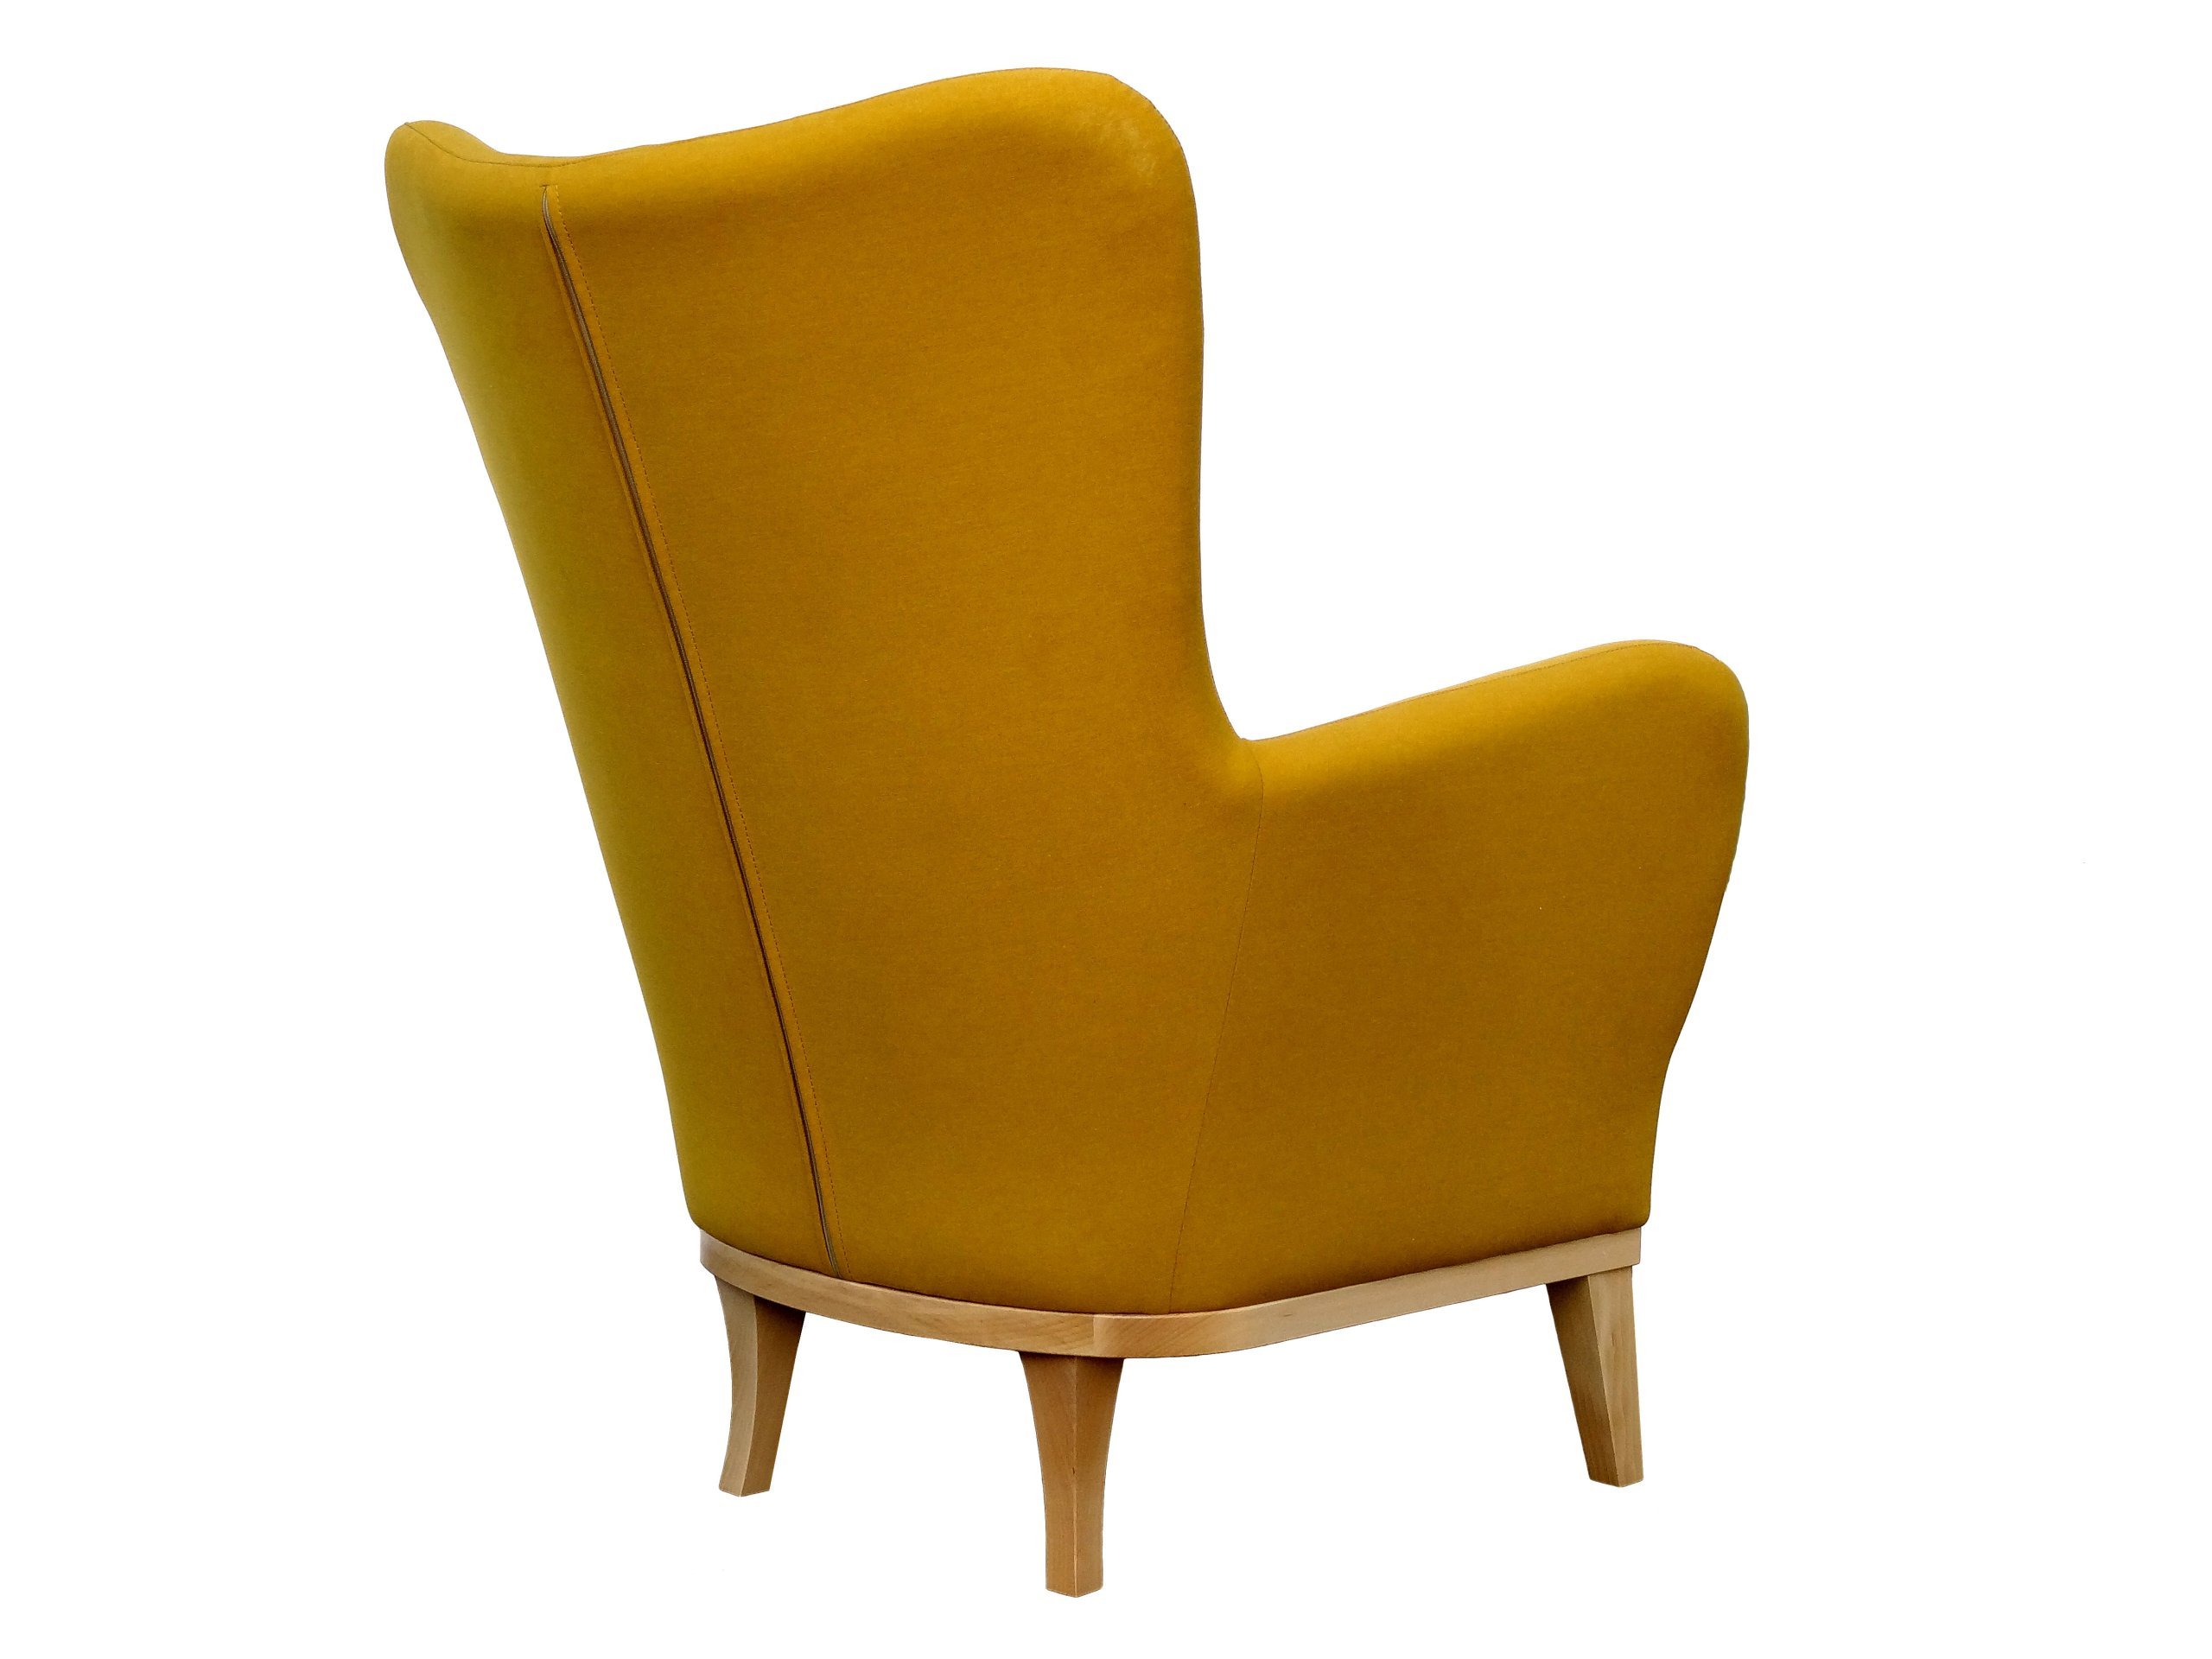 Горчичное кресло. Кресло Alto. Скандинавское кресло. Стул горчичного цвета. Желтое кресло.